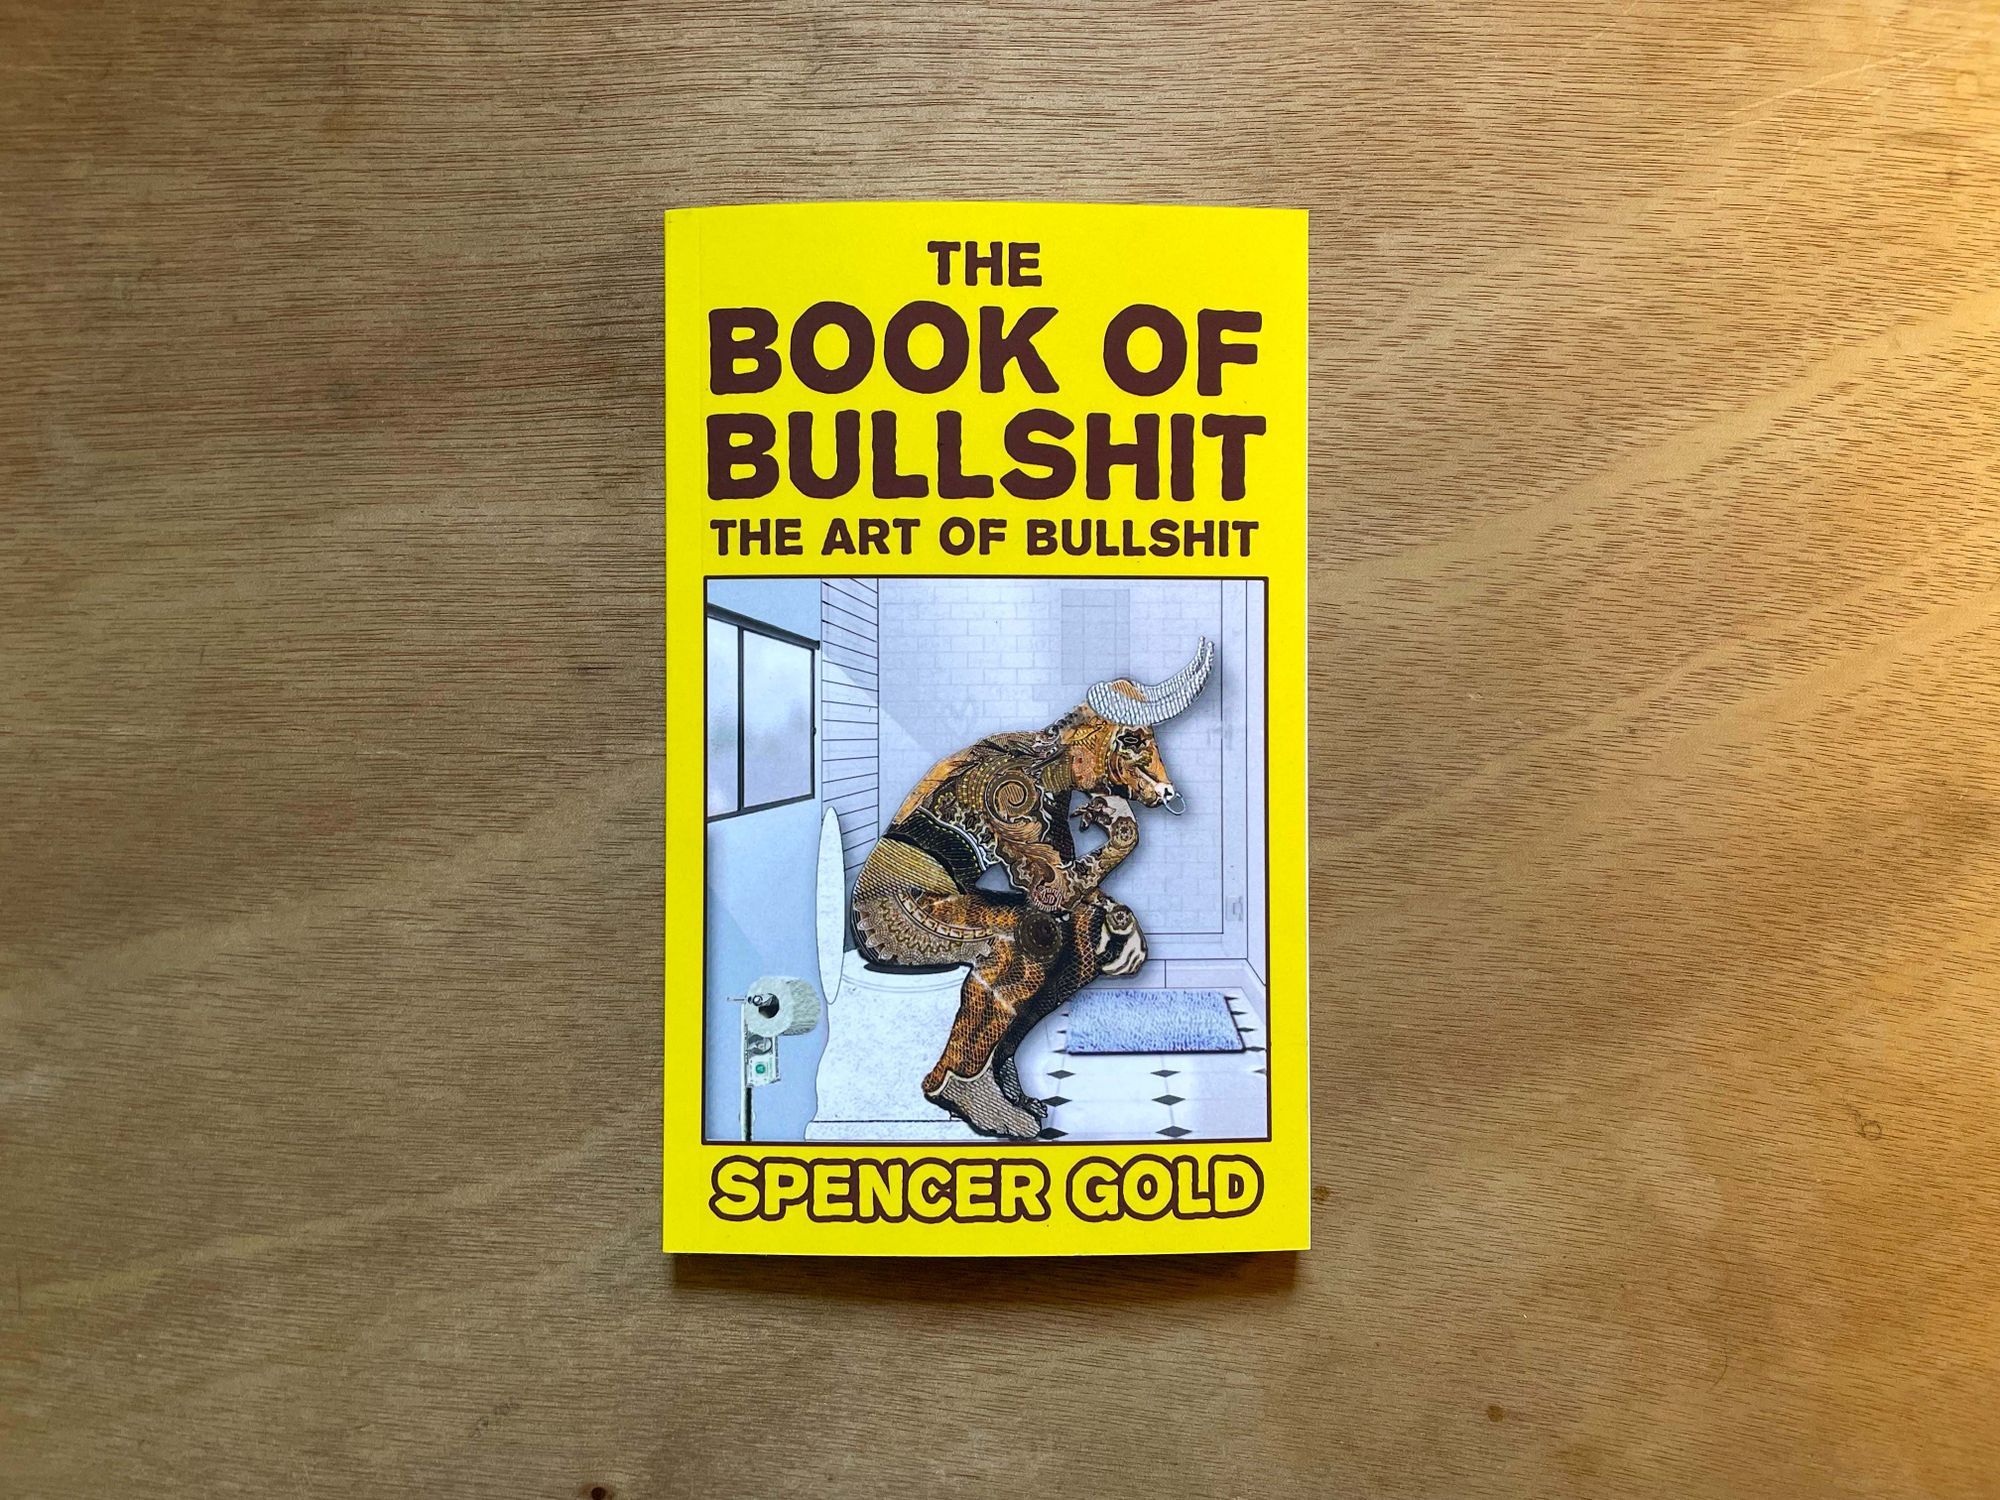 The Book of Bullshit will teach you to use bullshit for good